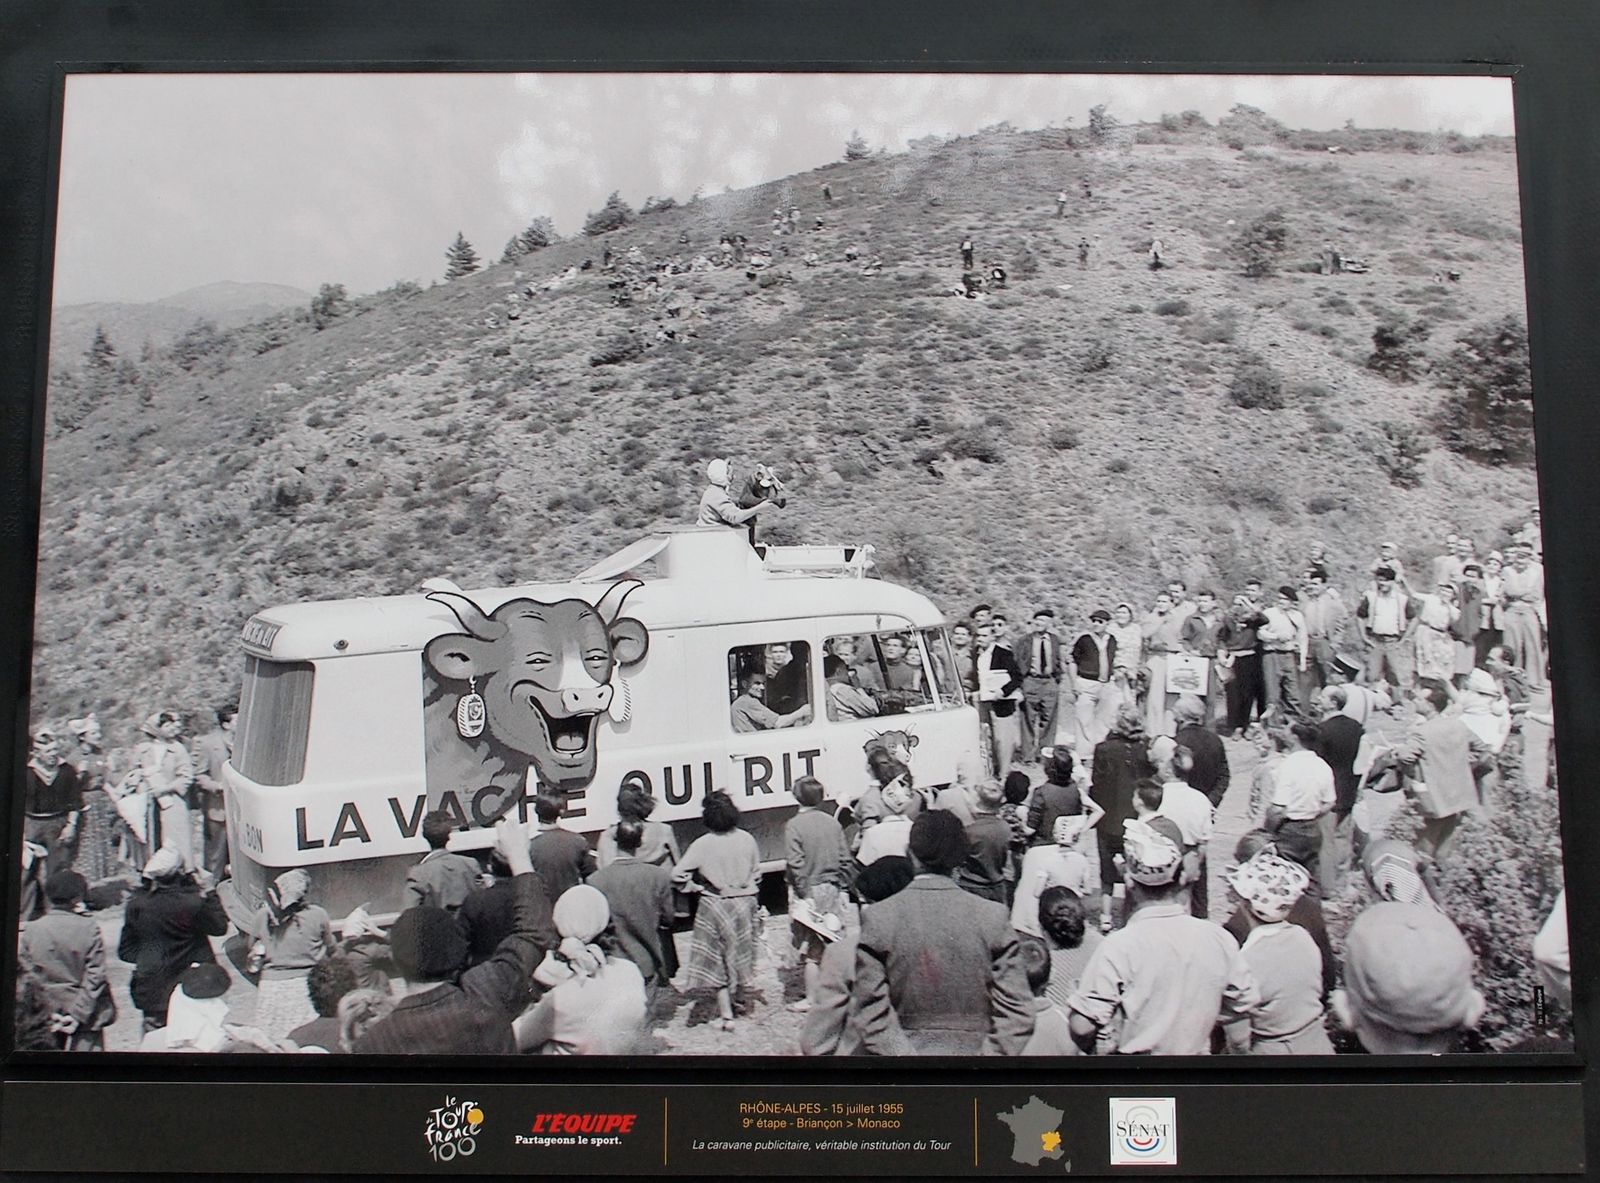 Tour-de-France-1955-caravane-pub-la-vache-qui-rit.JPG